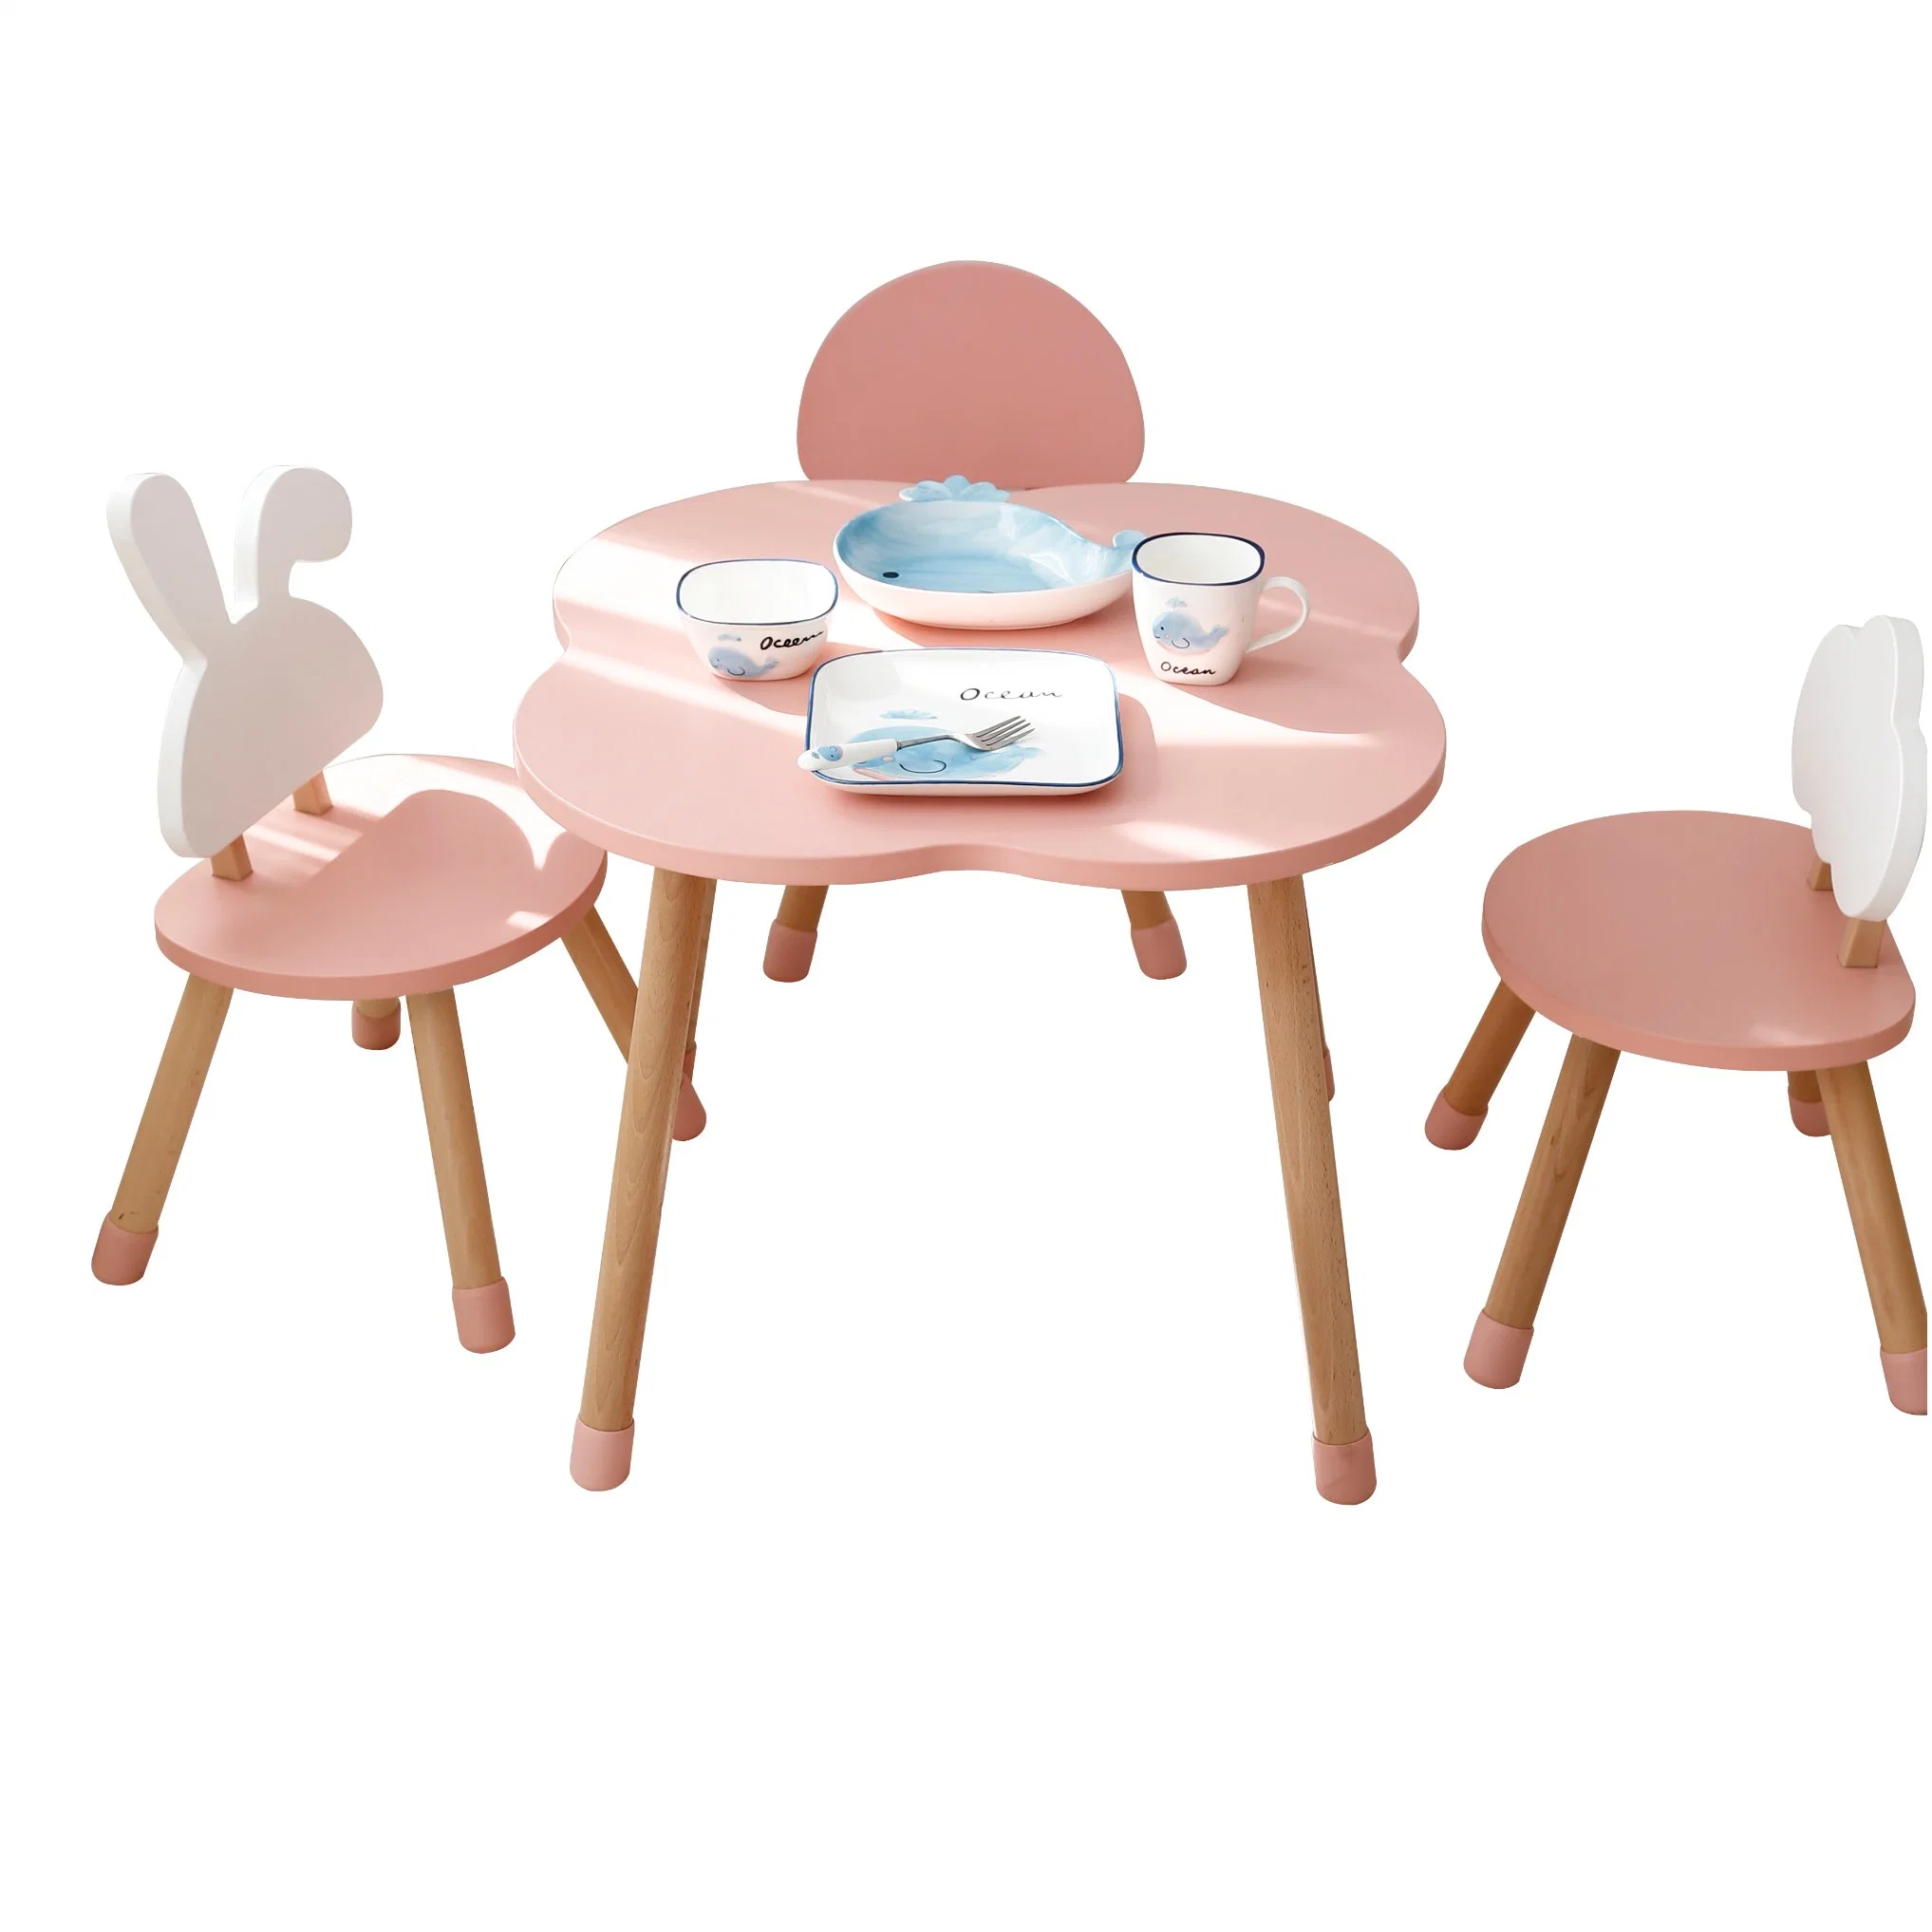 Горячие продажи четырех листьев клевера формы таблица детей письменный стол мебель